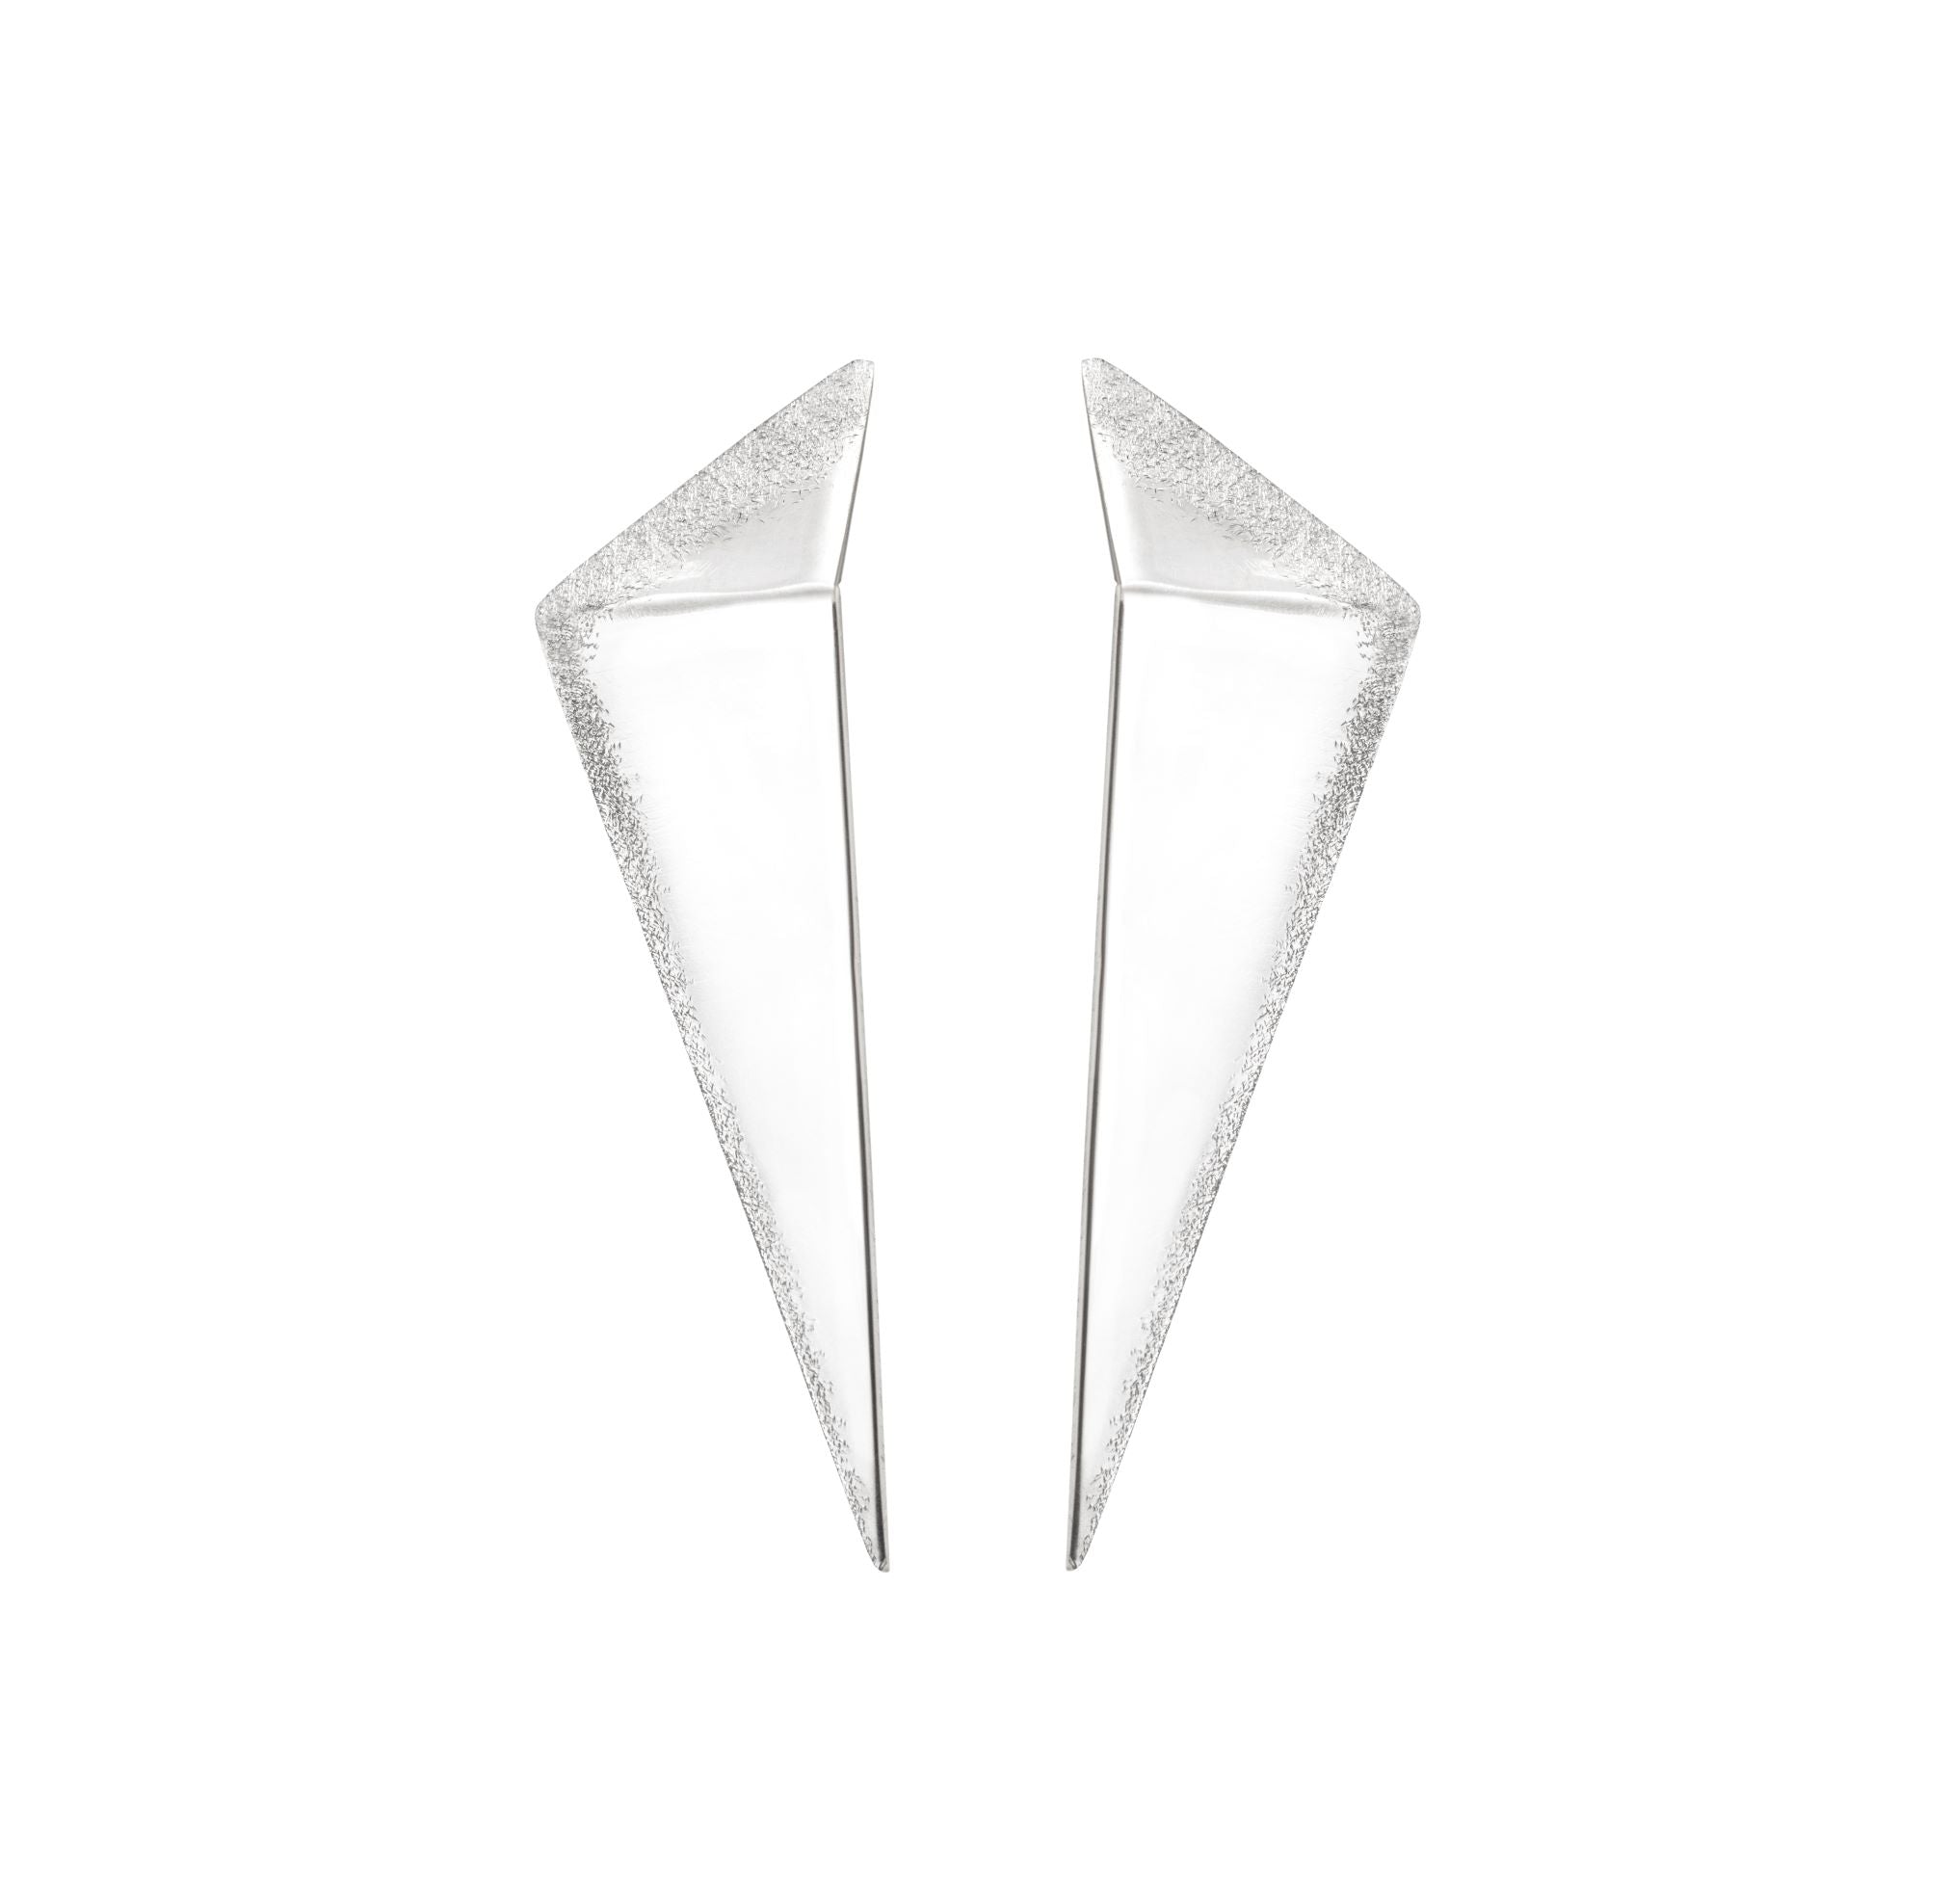 Geometric Silver Spike Earrings - Romany Starrs